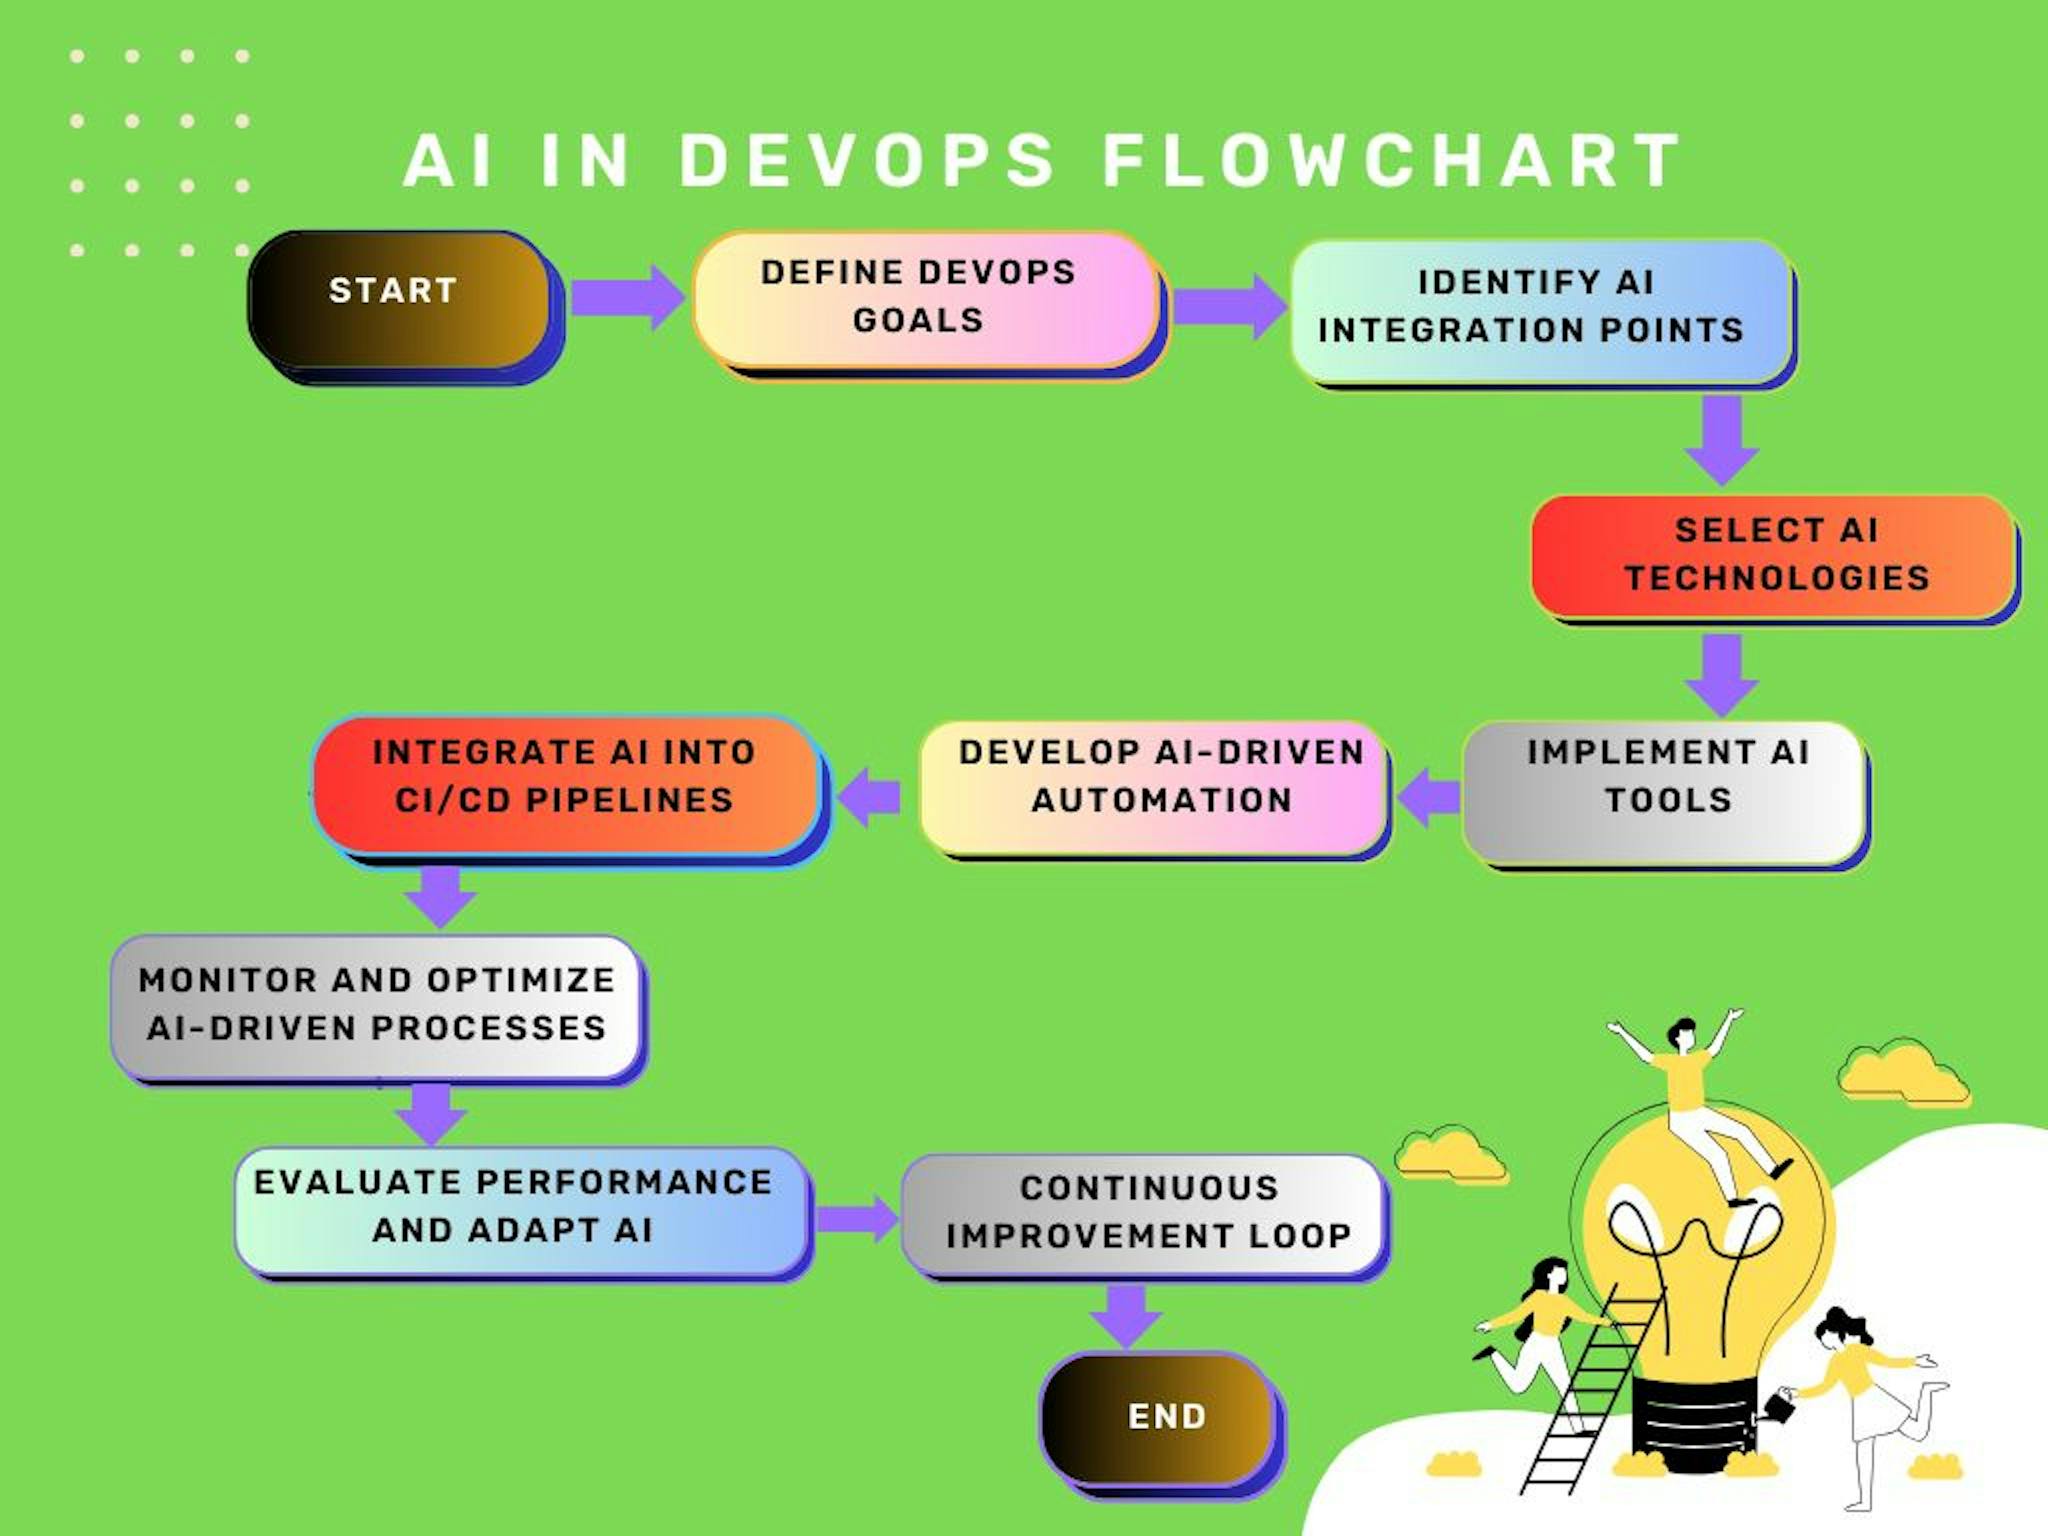 Figure: AI in DevOps Flowchart